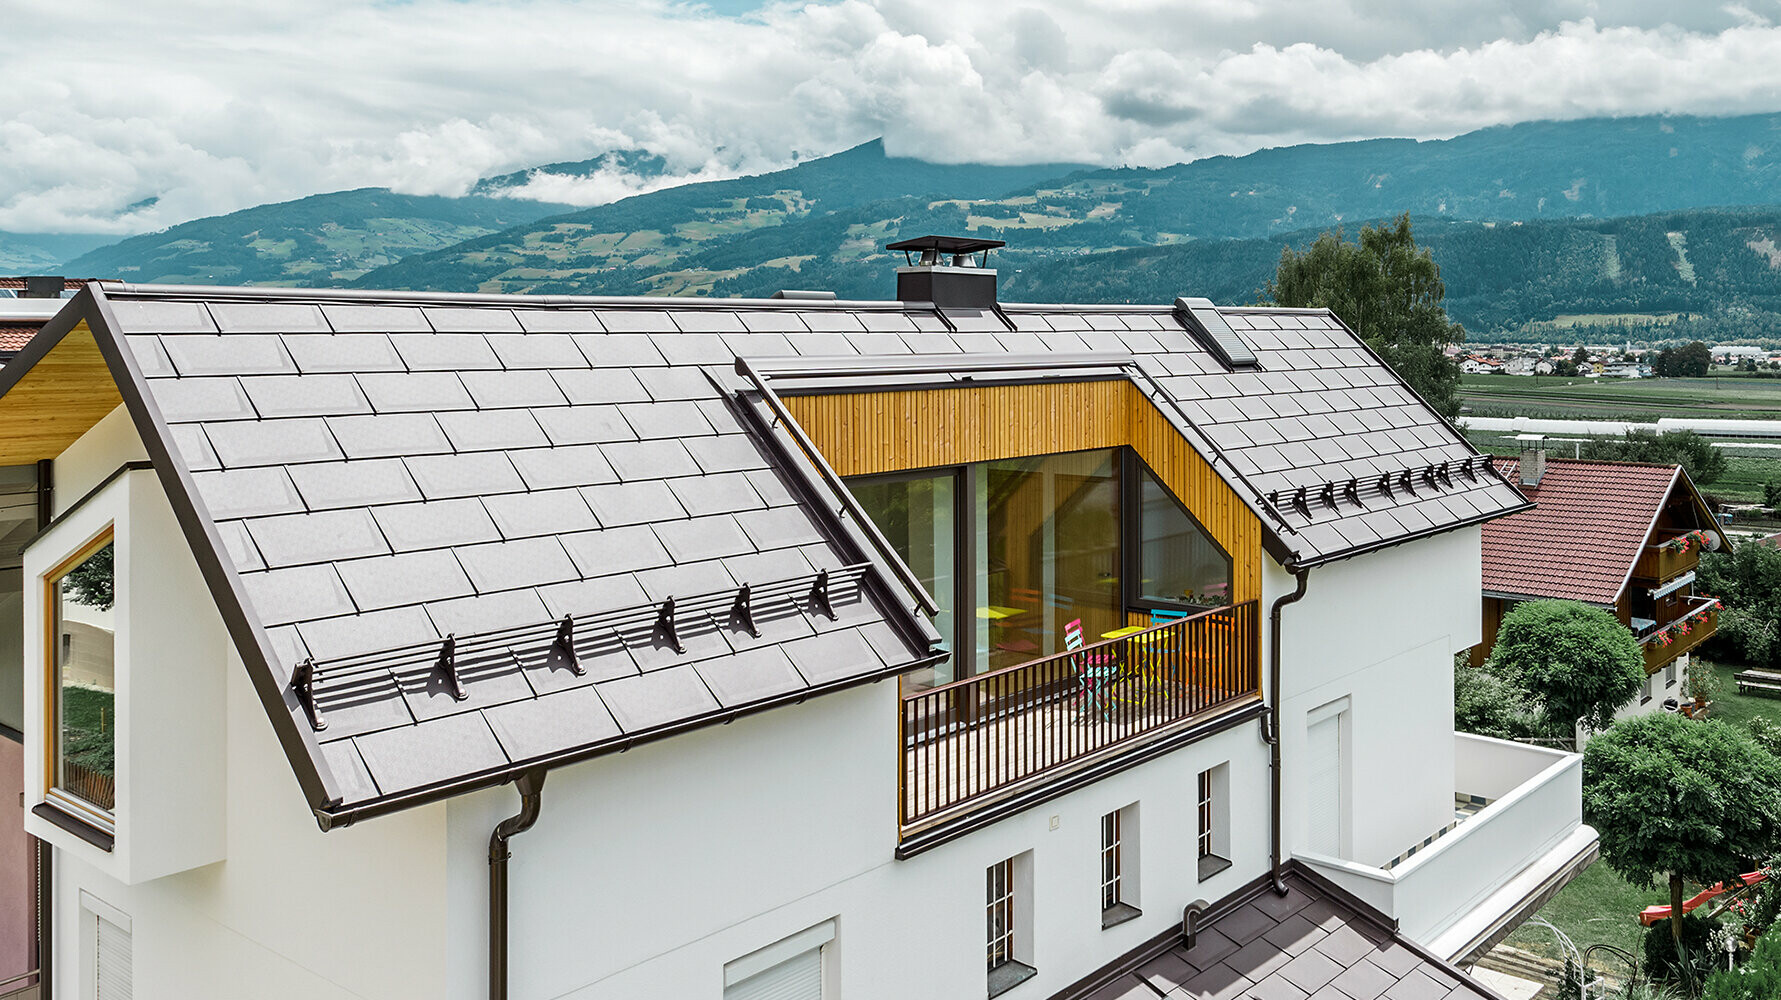 Wohnhaus eingedeckt mit der Aluminium Dachplatte R.16 in Nussbraun von PREFA mit großem Balkon und heller Putzfassade.